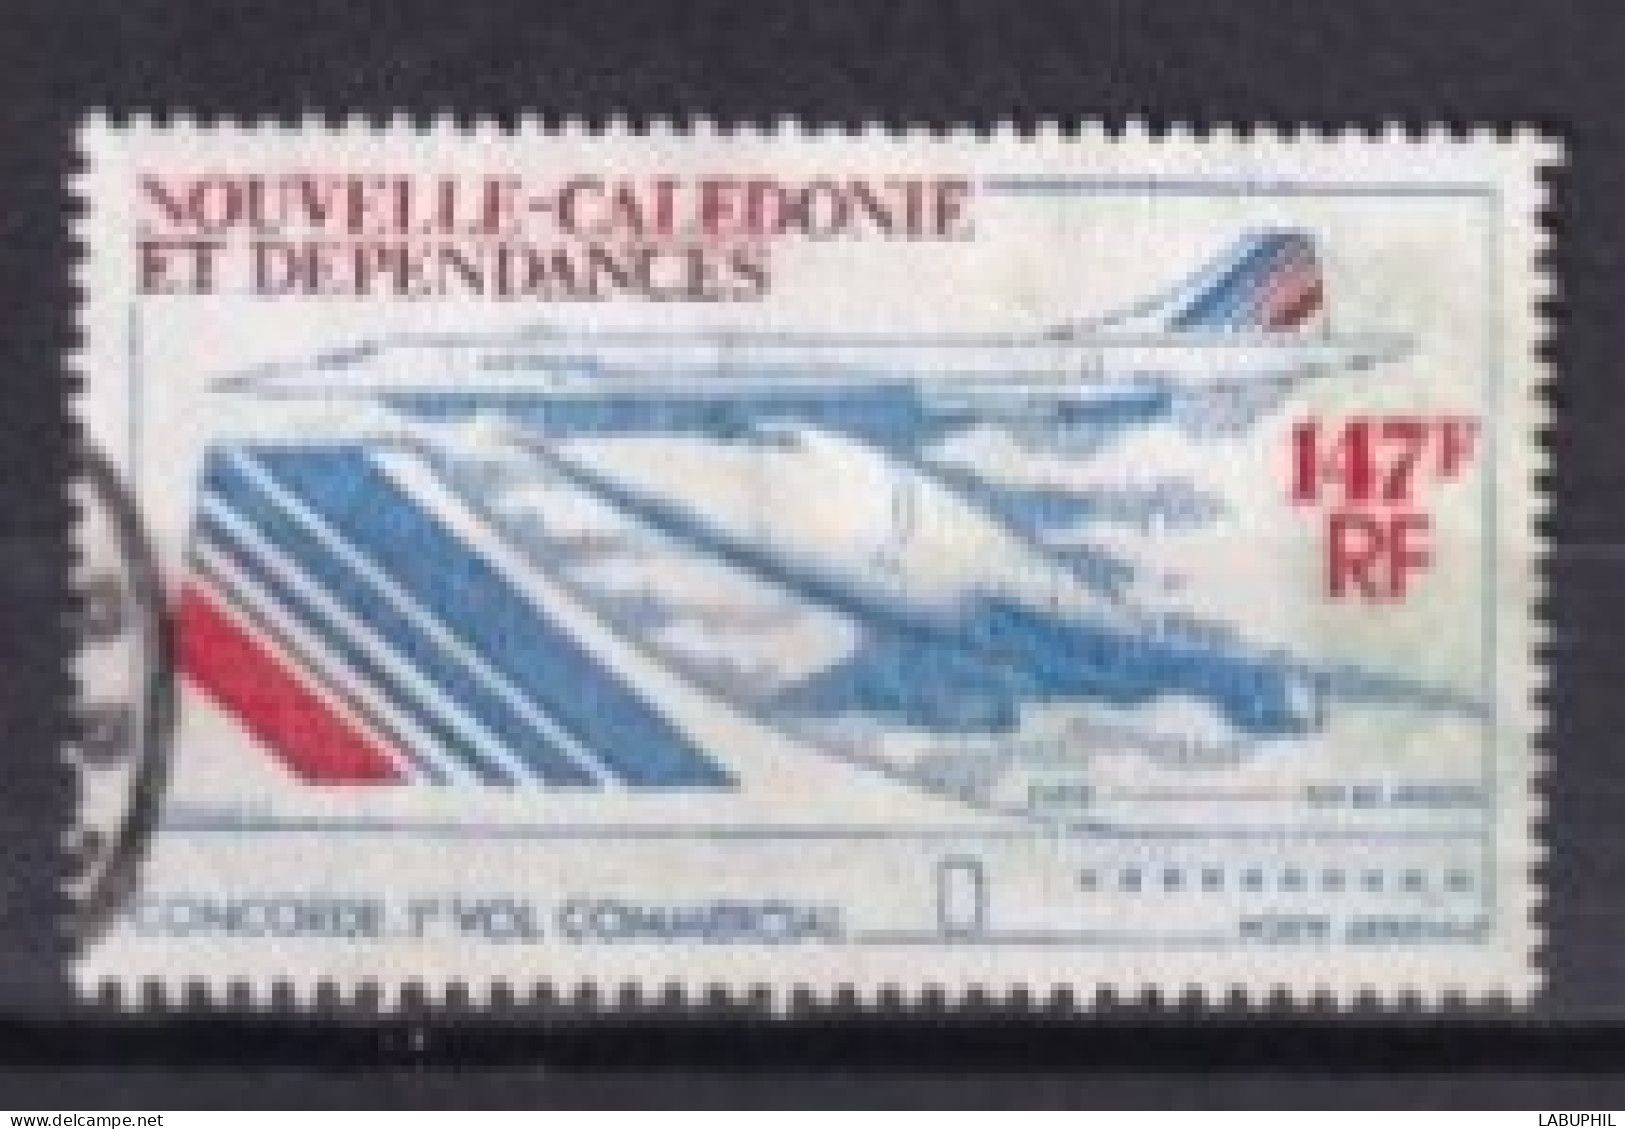 NOUVELLE CALEDONIE Dispersion D'une Collection Oblitéré Used  1977 Avion Concorde - Oblitérés